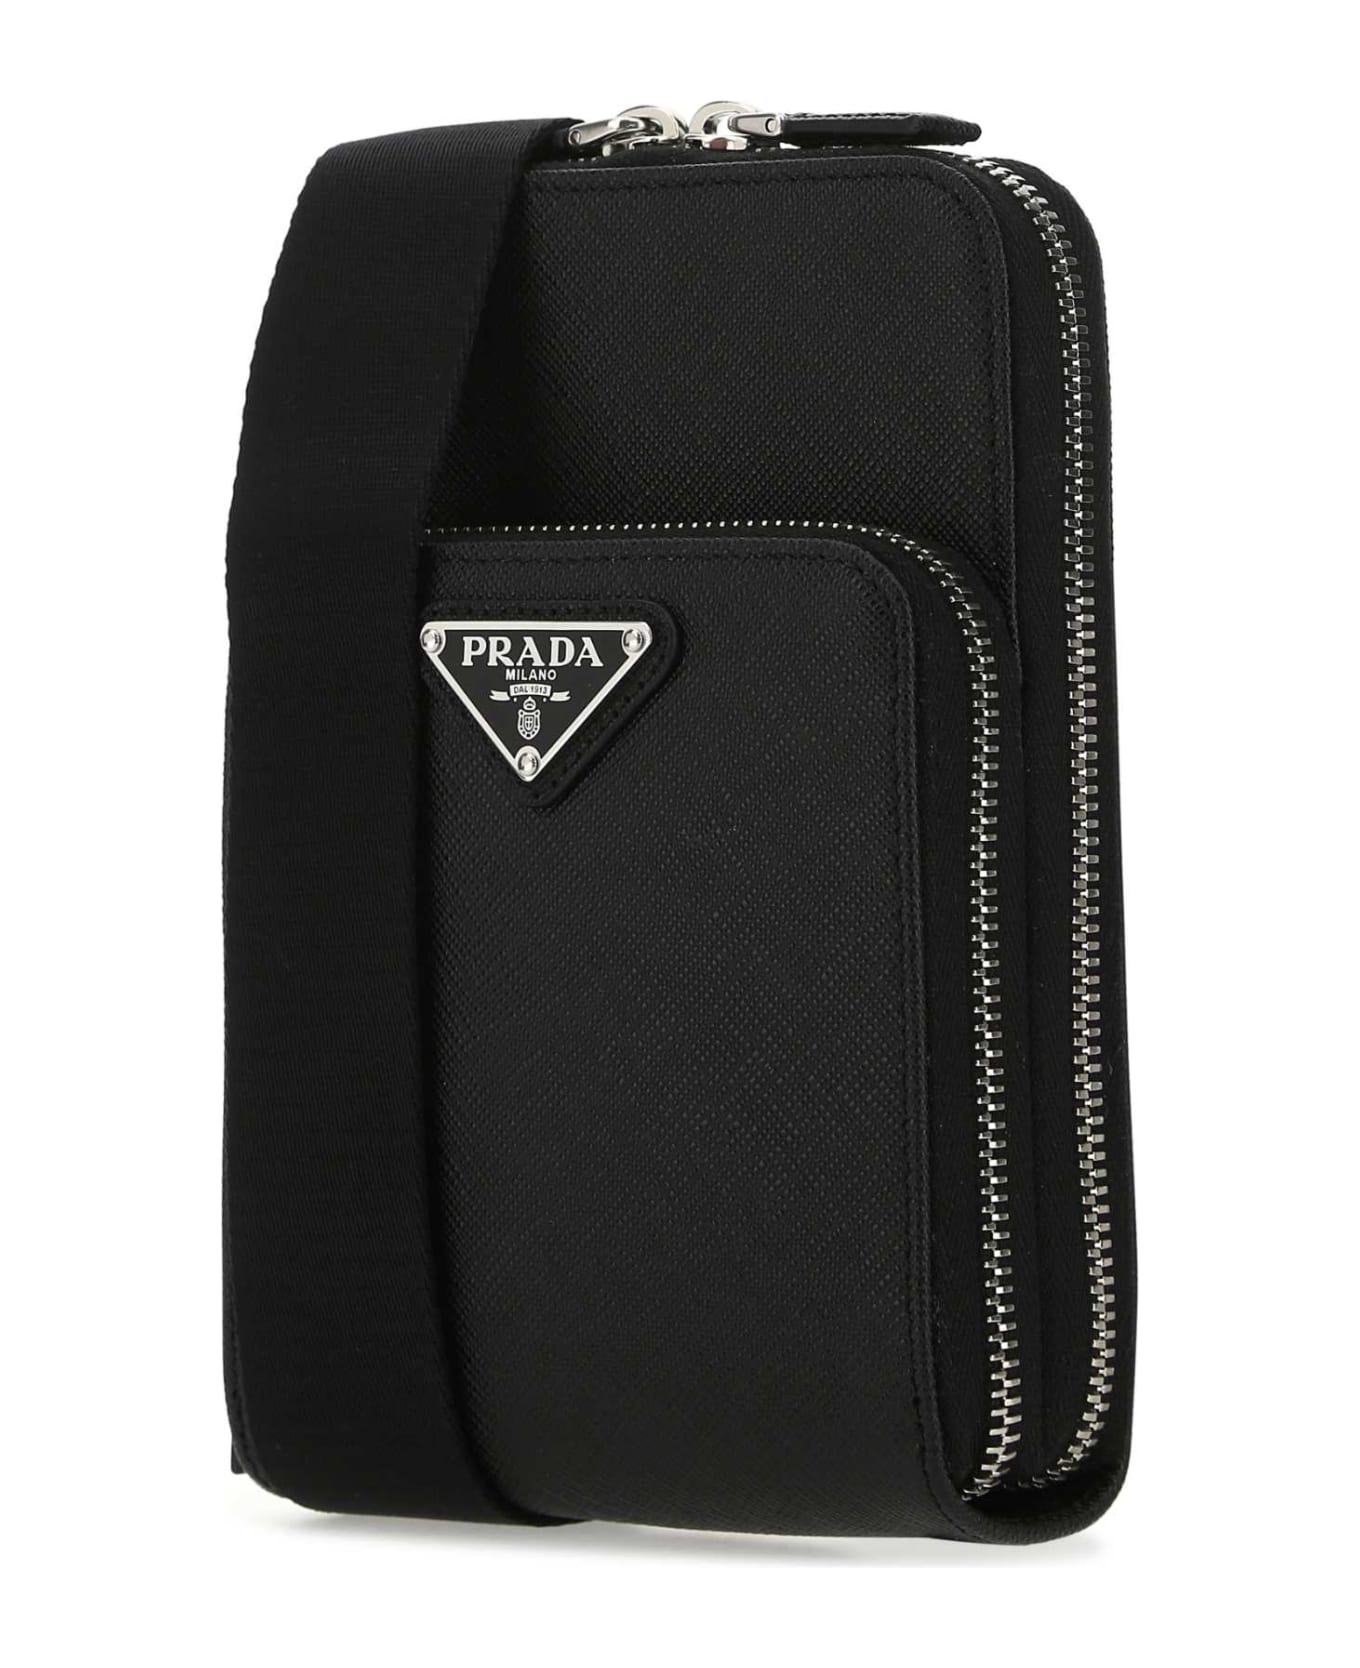 Prada Black Leather Phone Case - NERO